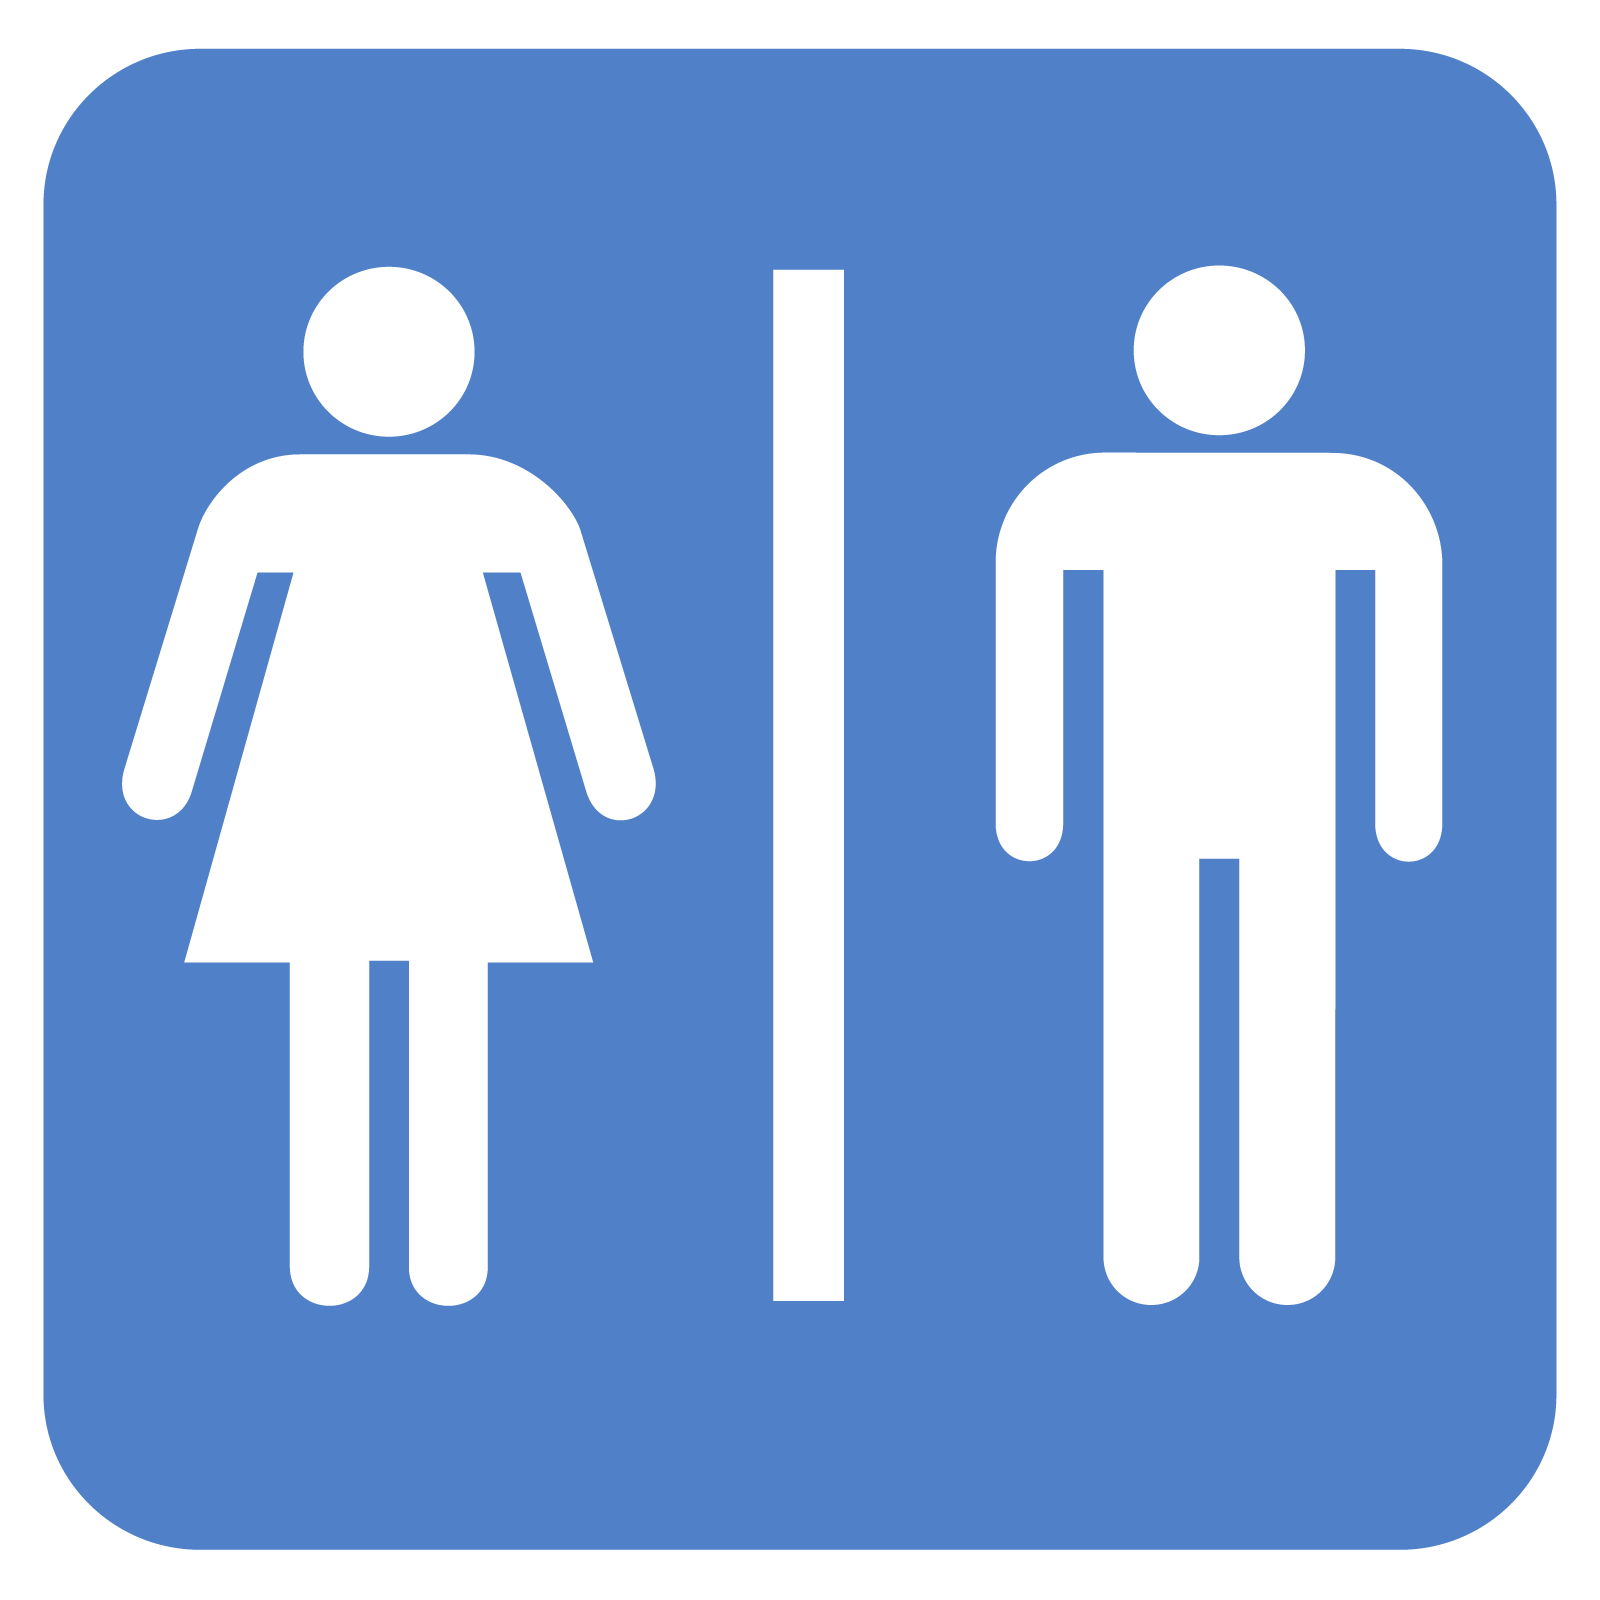 Restroom Icon image #42395